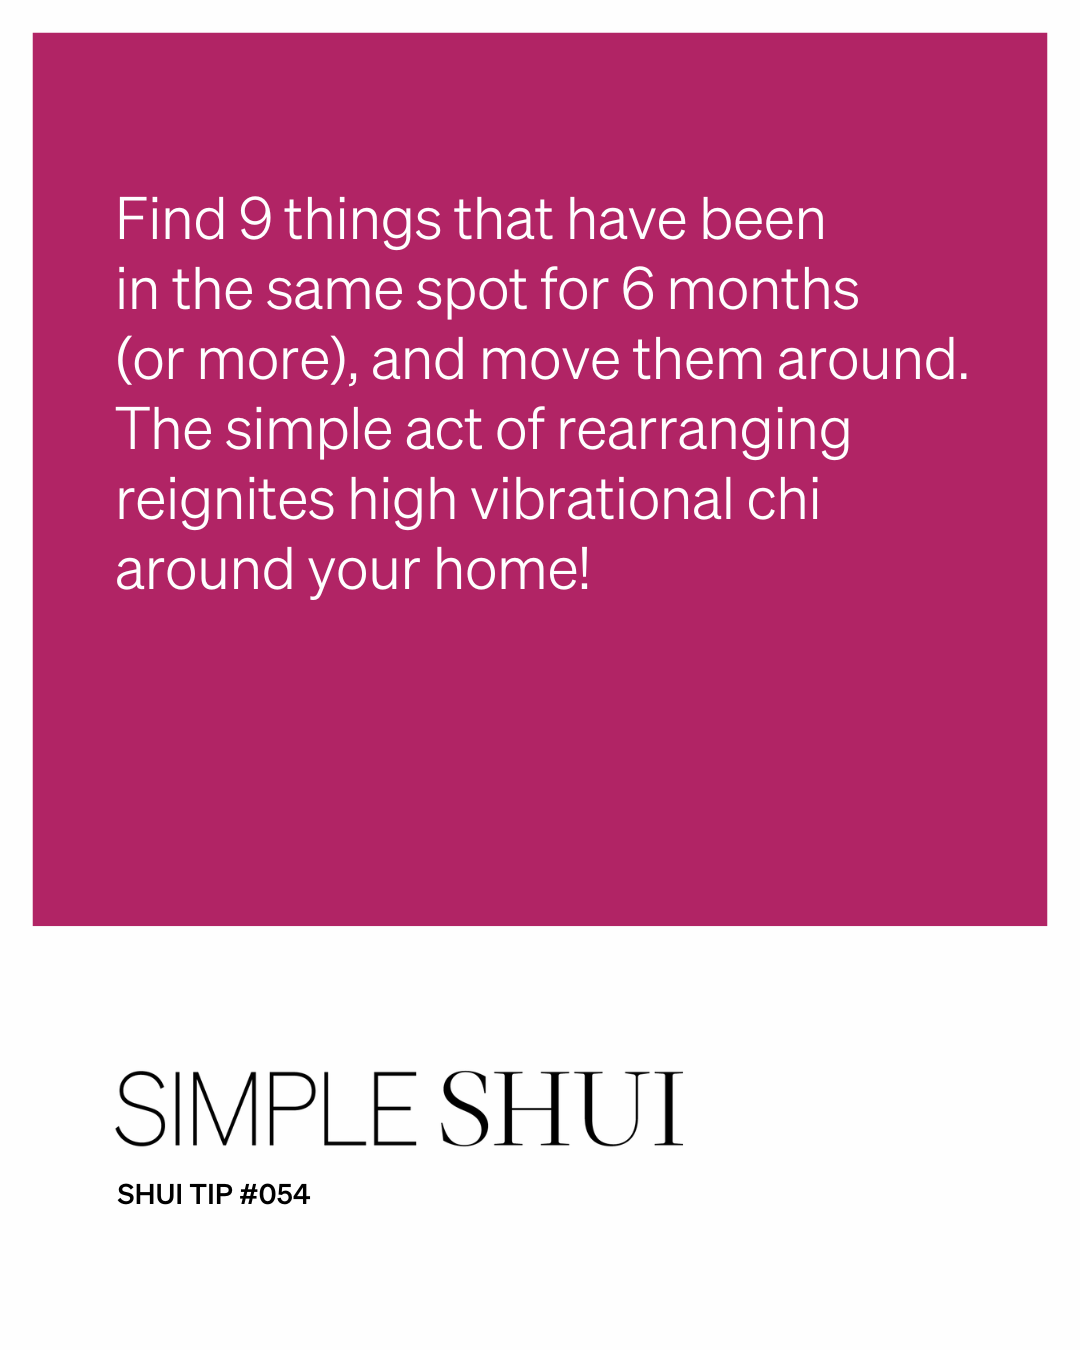 simple shui tip: do the shuffle!